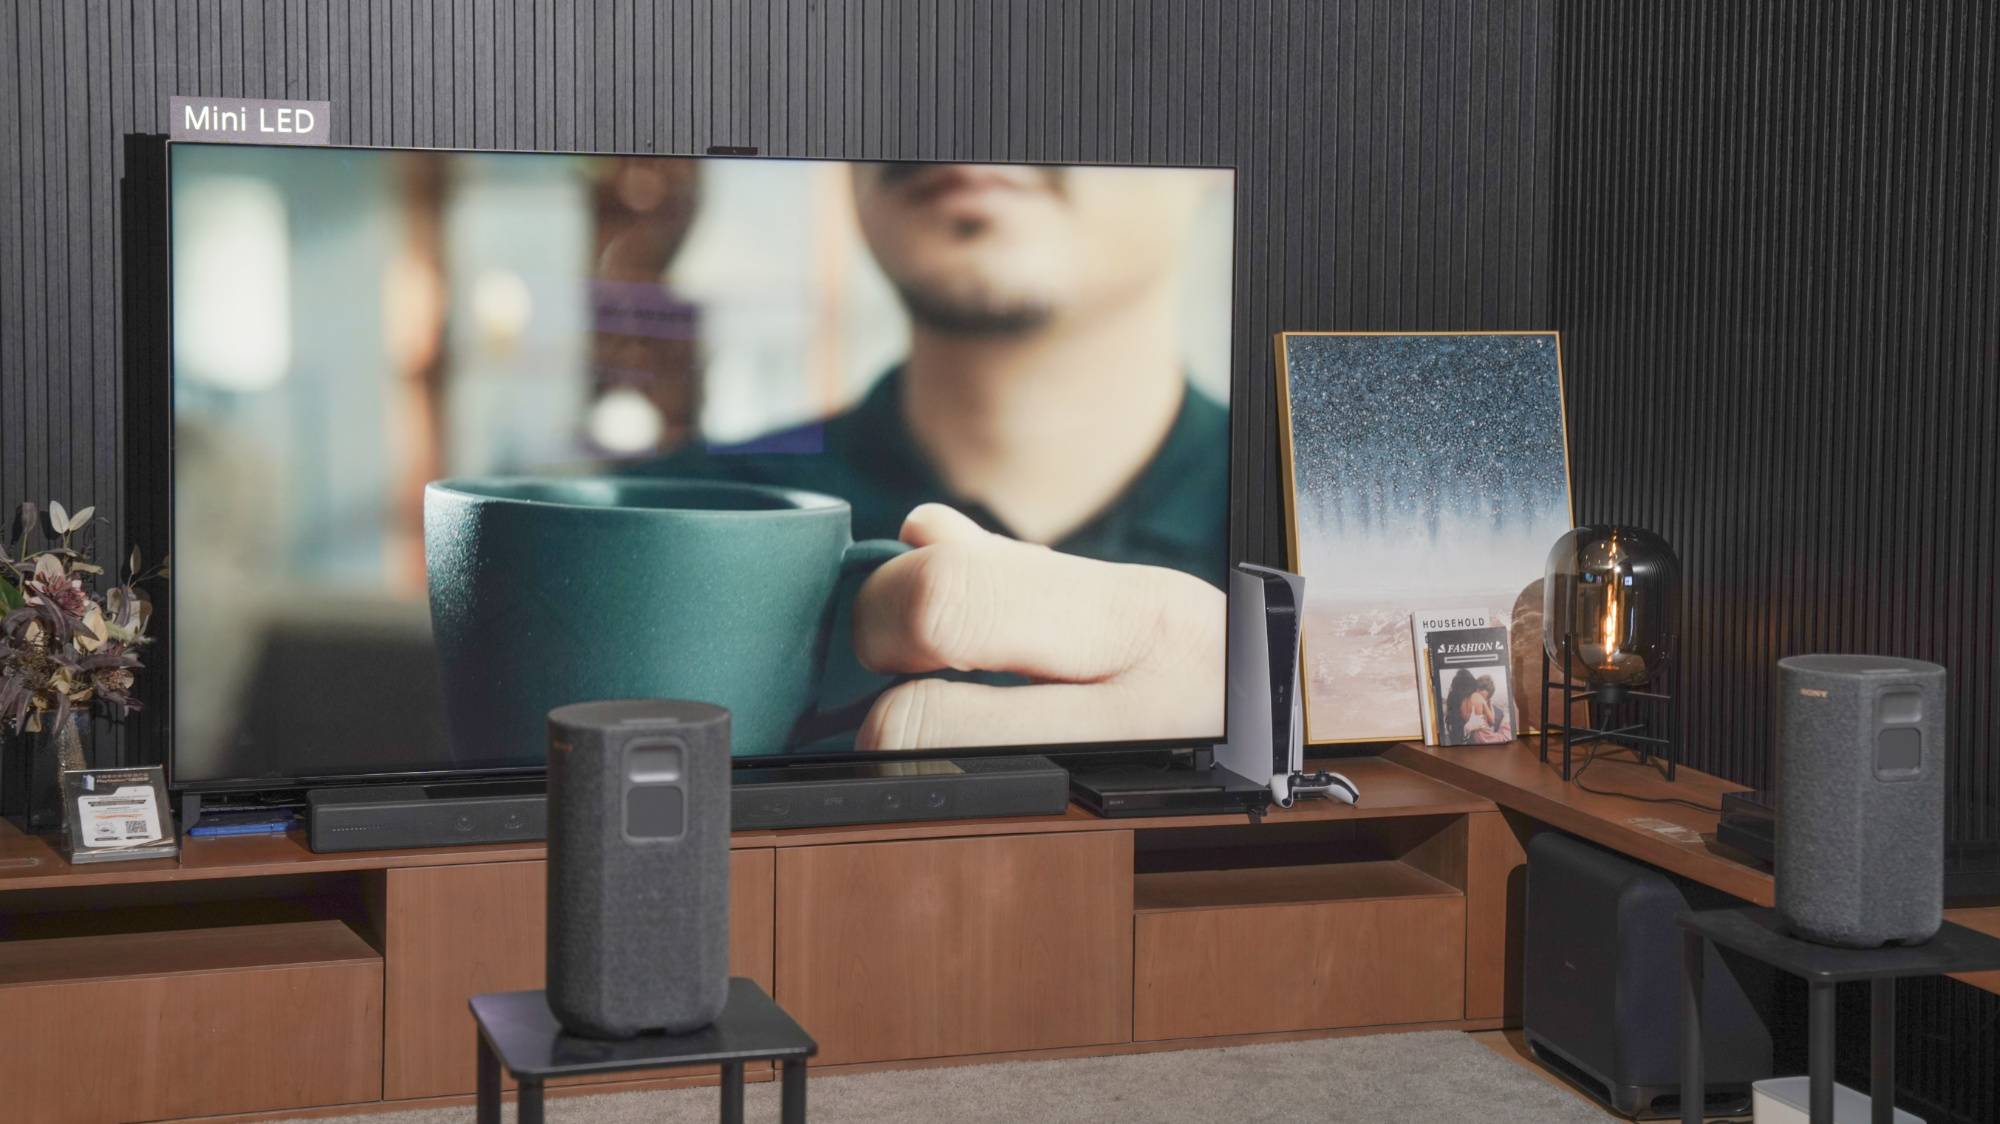 shj - Esperienza del nuovo prodotto Sony TV 2022: il pannello TV QD-OLED è molto profumato e costoso